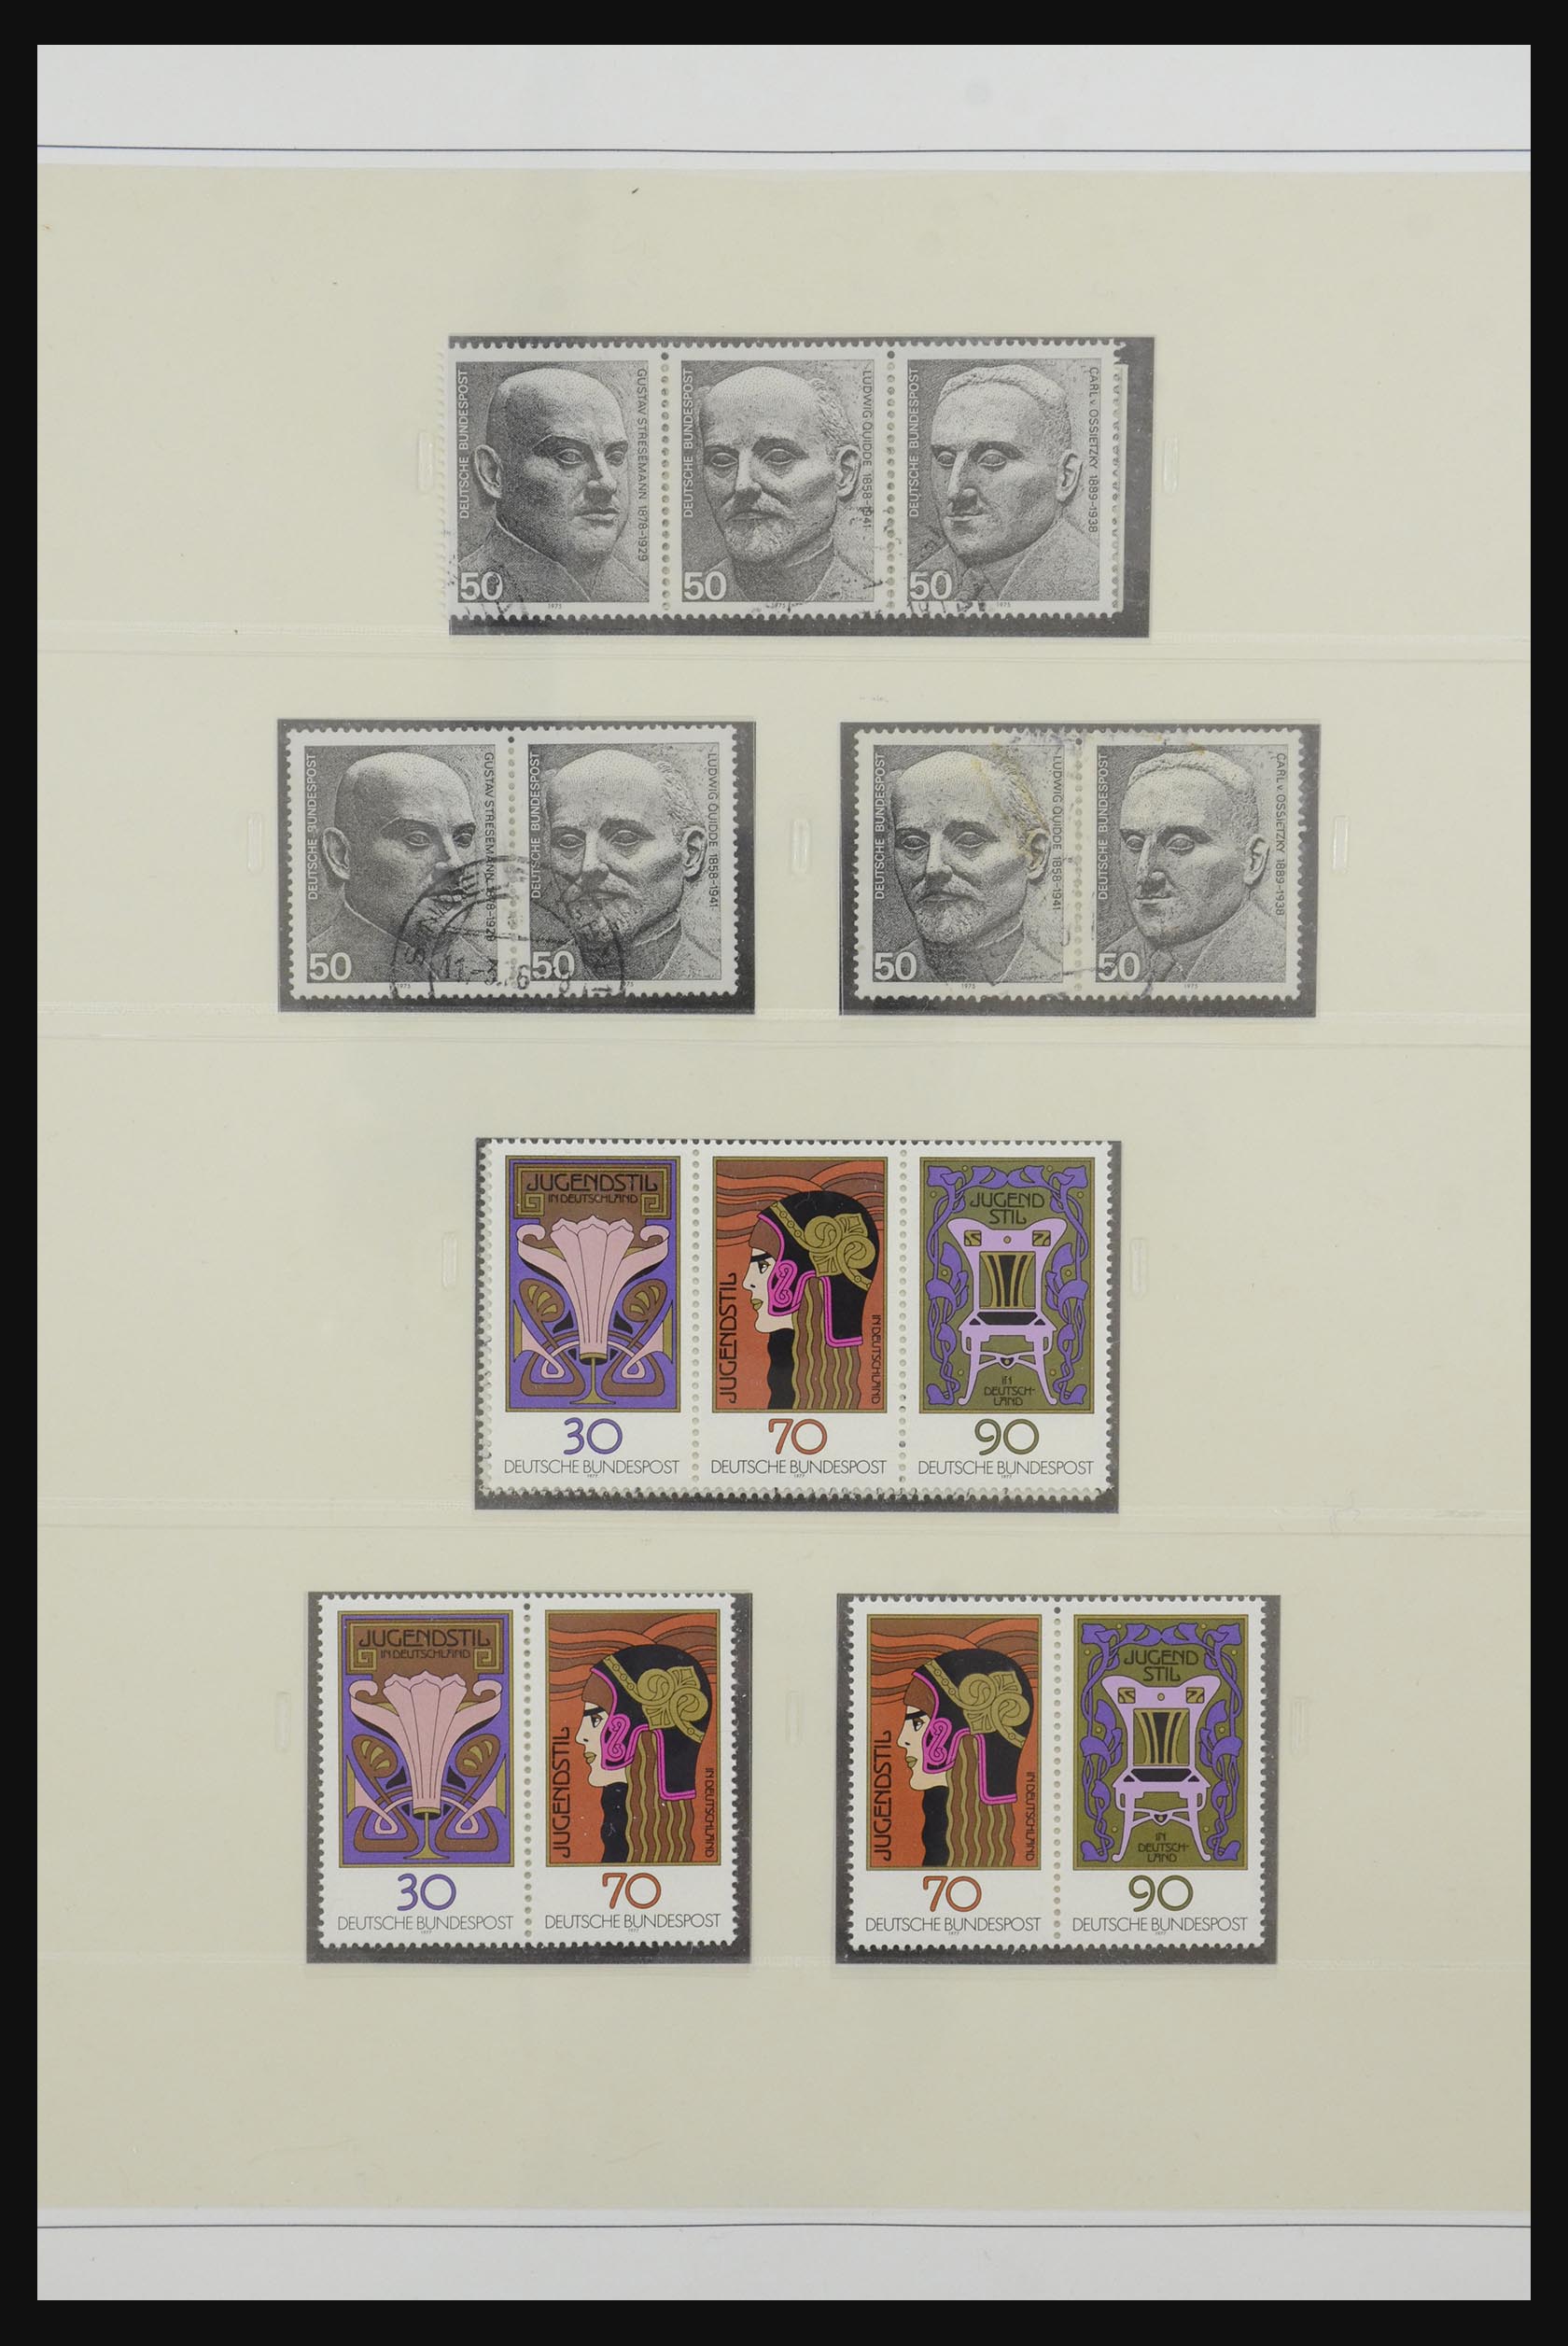 31842 054 - 31842 Bundespost combinaties 1951-2003.